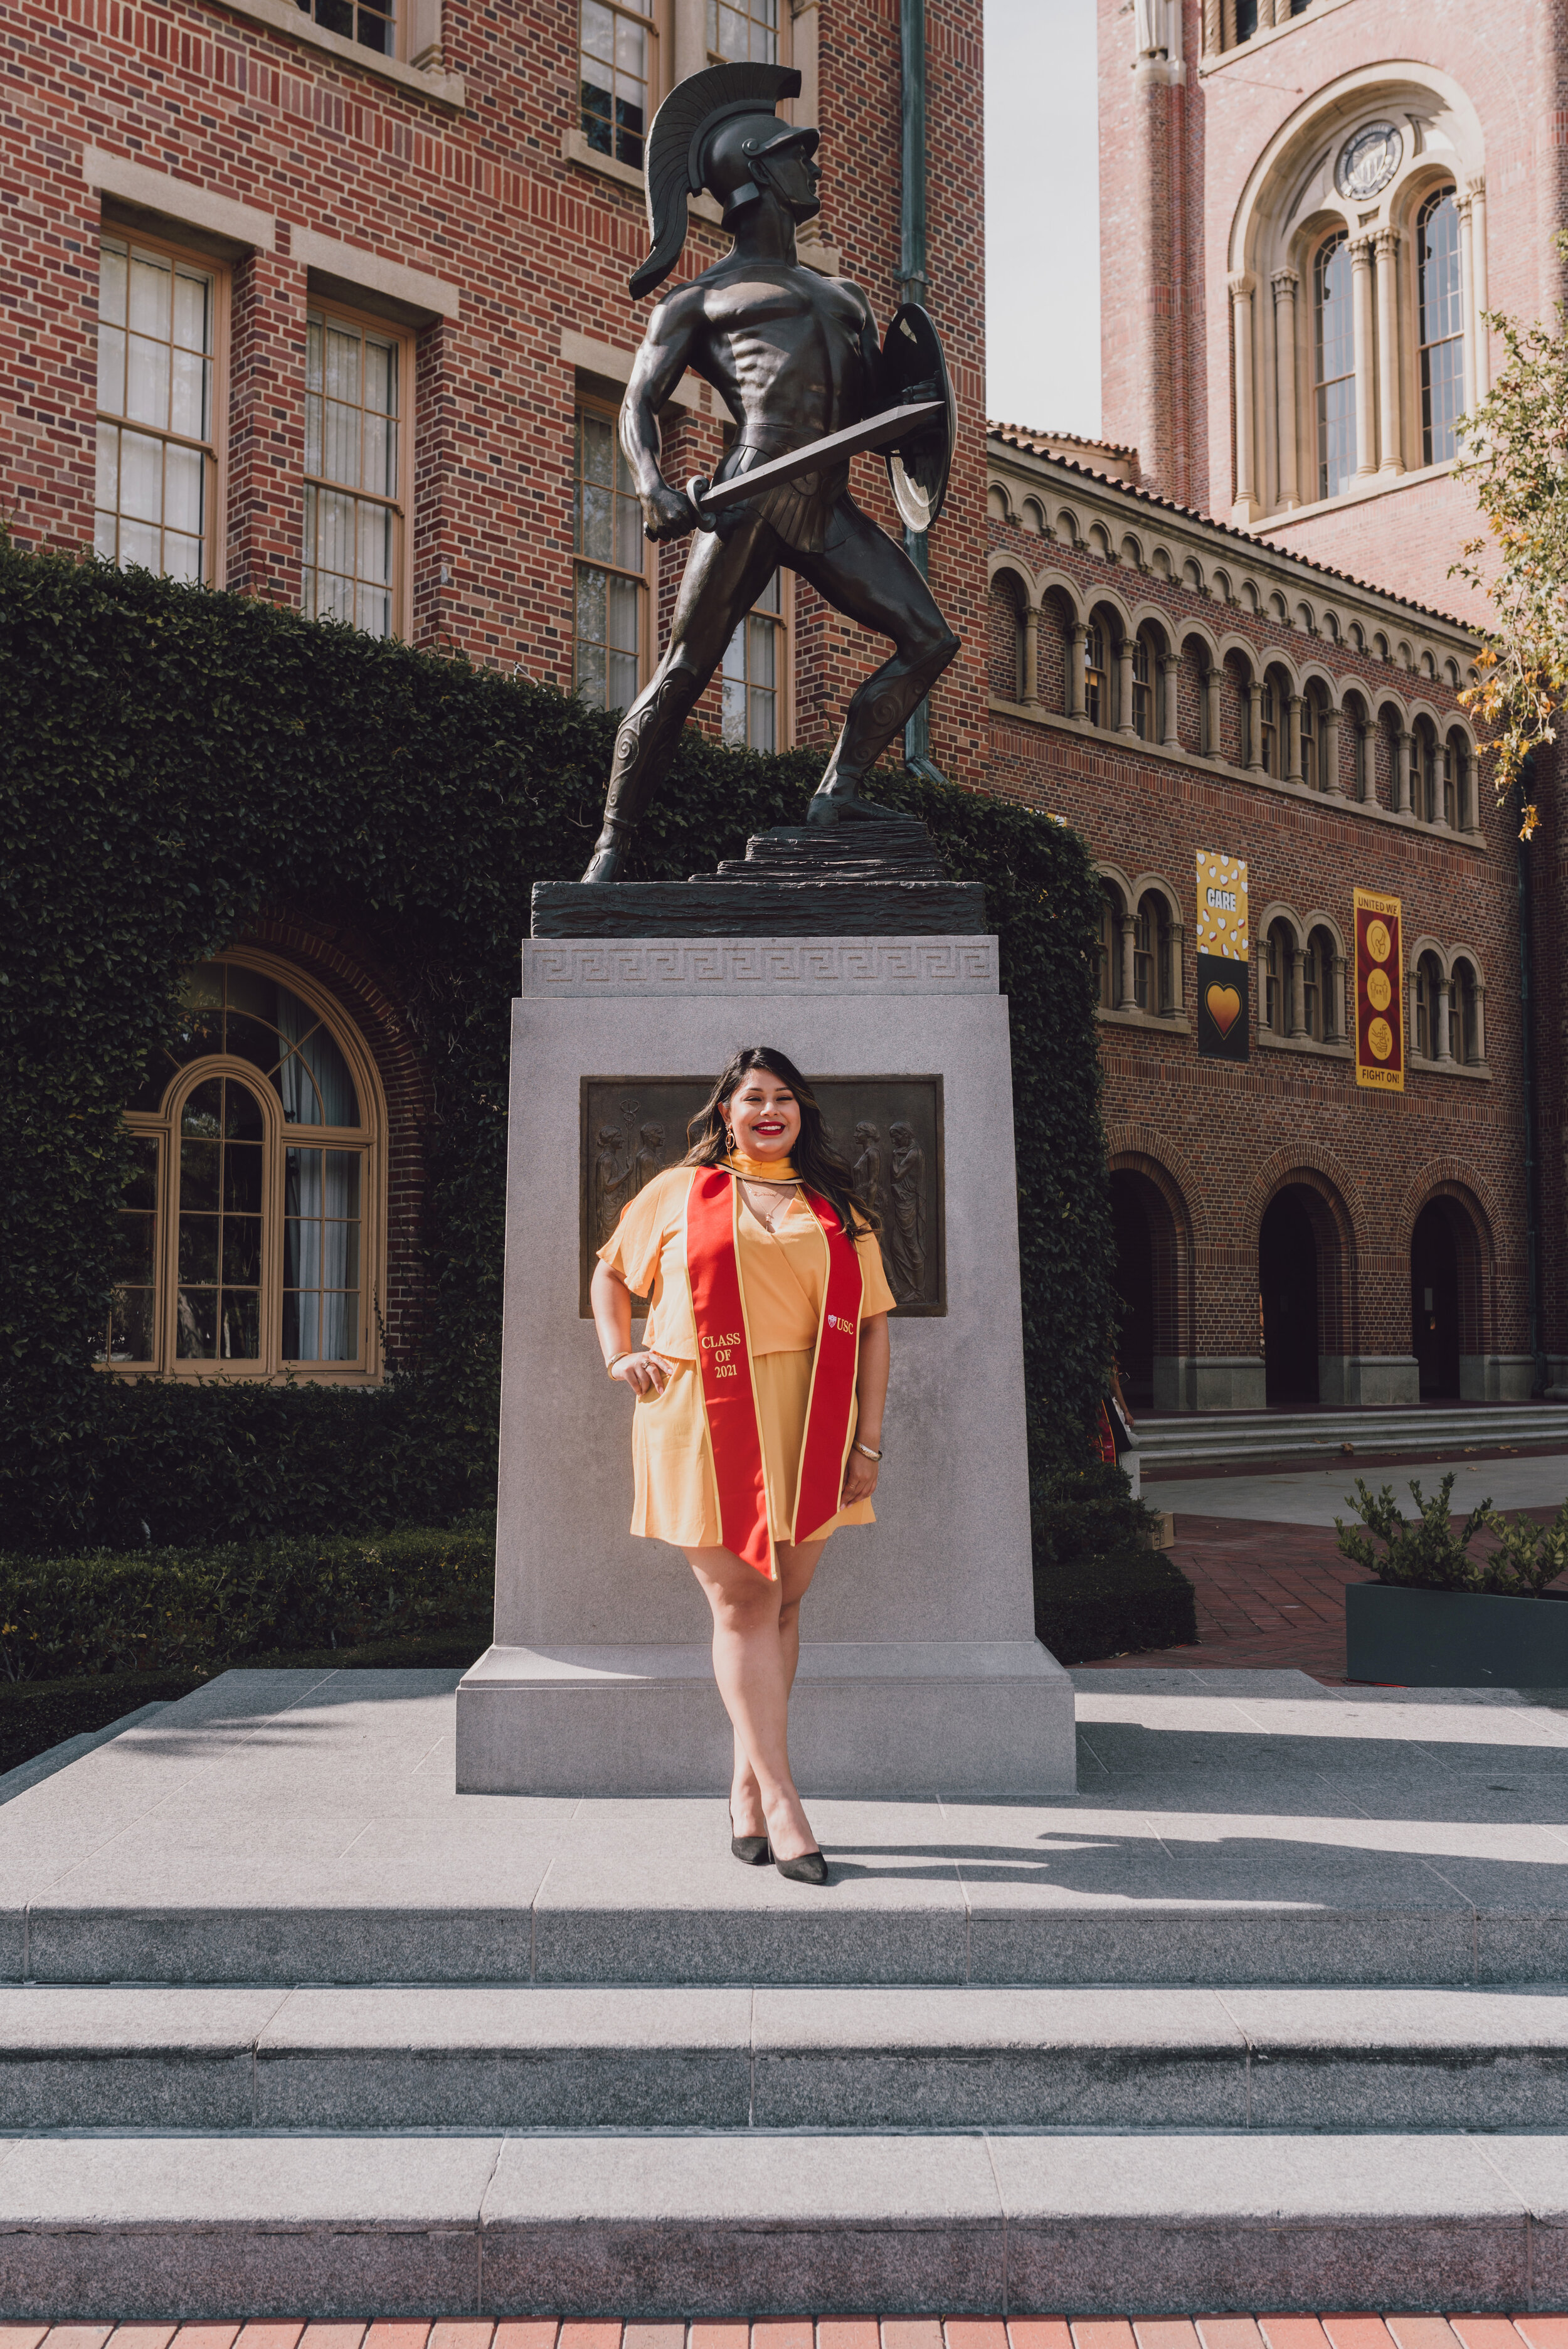 LosAngeles-Graduation-Portrait-Photographer-USC.jpg